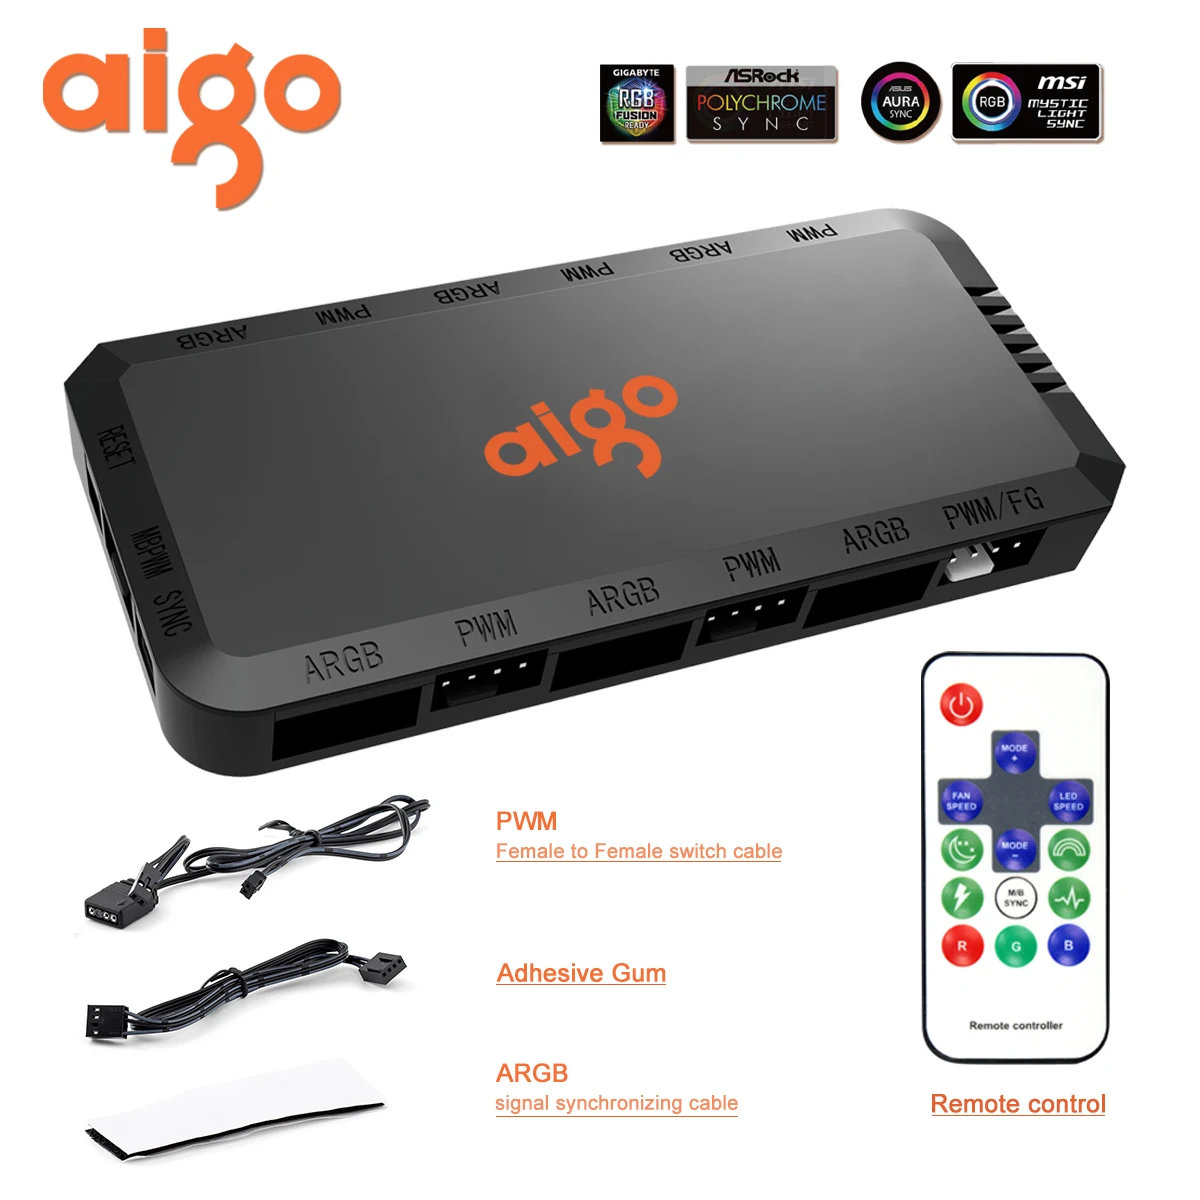 Универсальный контроллер скорости Aigo ACP1, устройство для управления компьютером, 6 портов, 3 контакта, 5 В